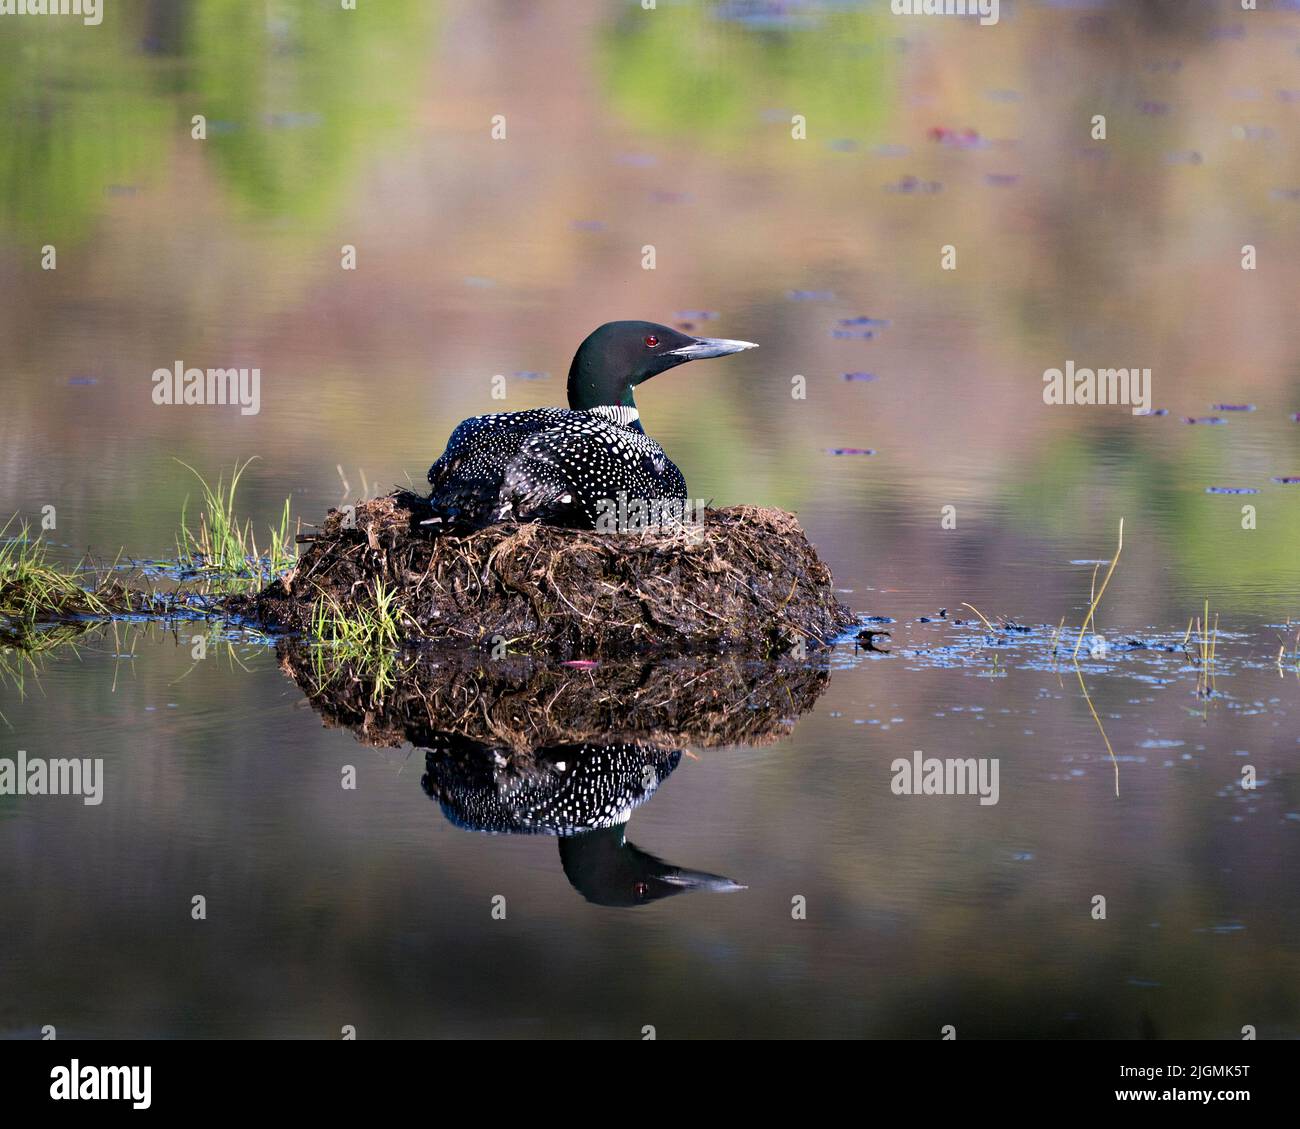 Loon nidificato sul suo nido con erbe paludose, fango e acqua nel suo ambiente e habitat che mostra occhi rossi, piuma nera e bianca Foto Stock